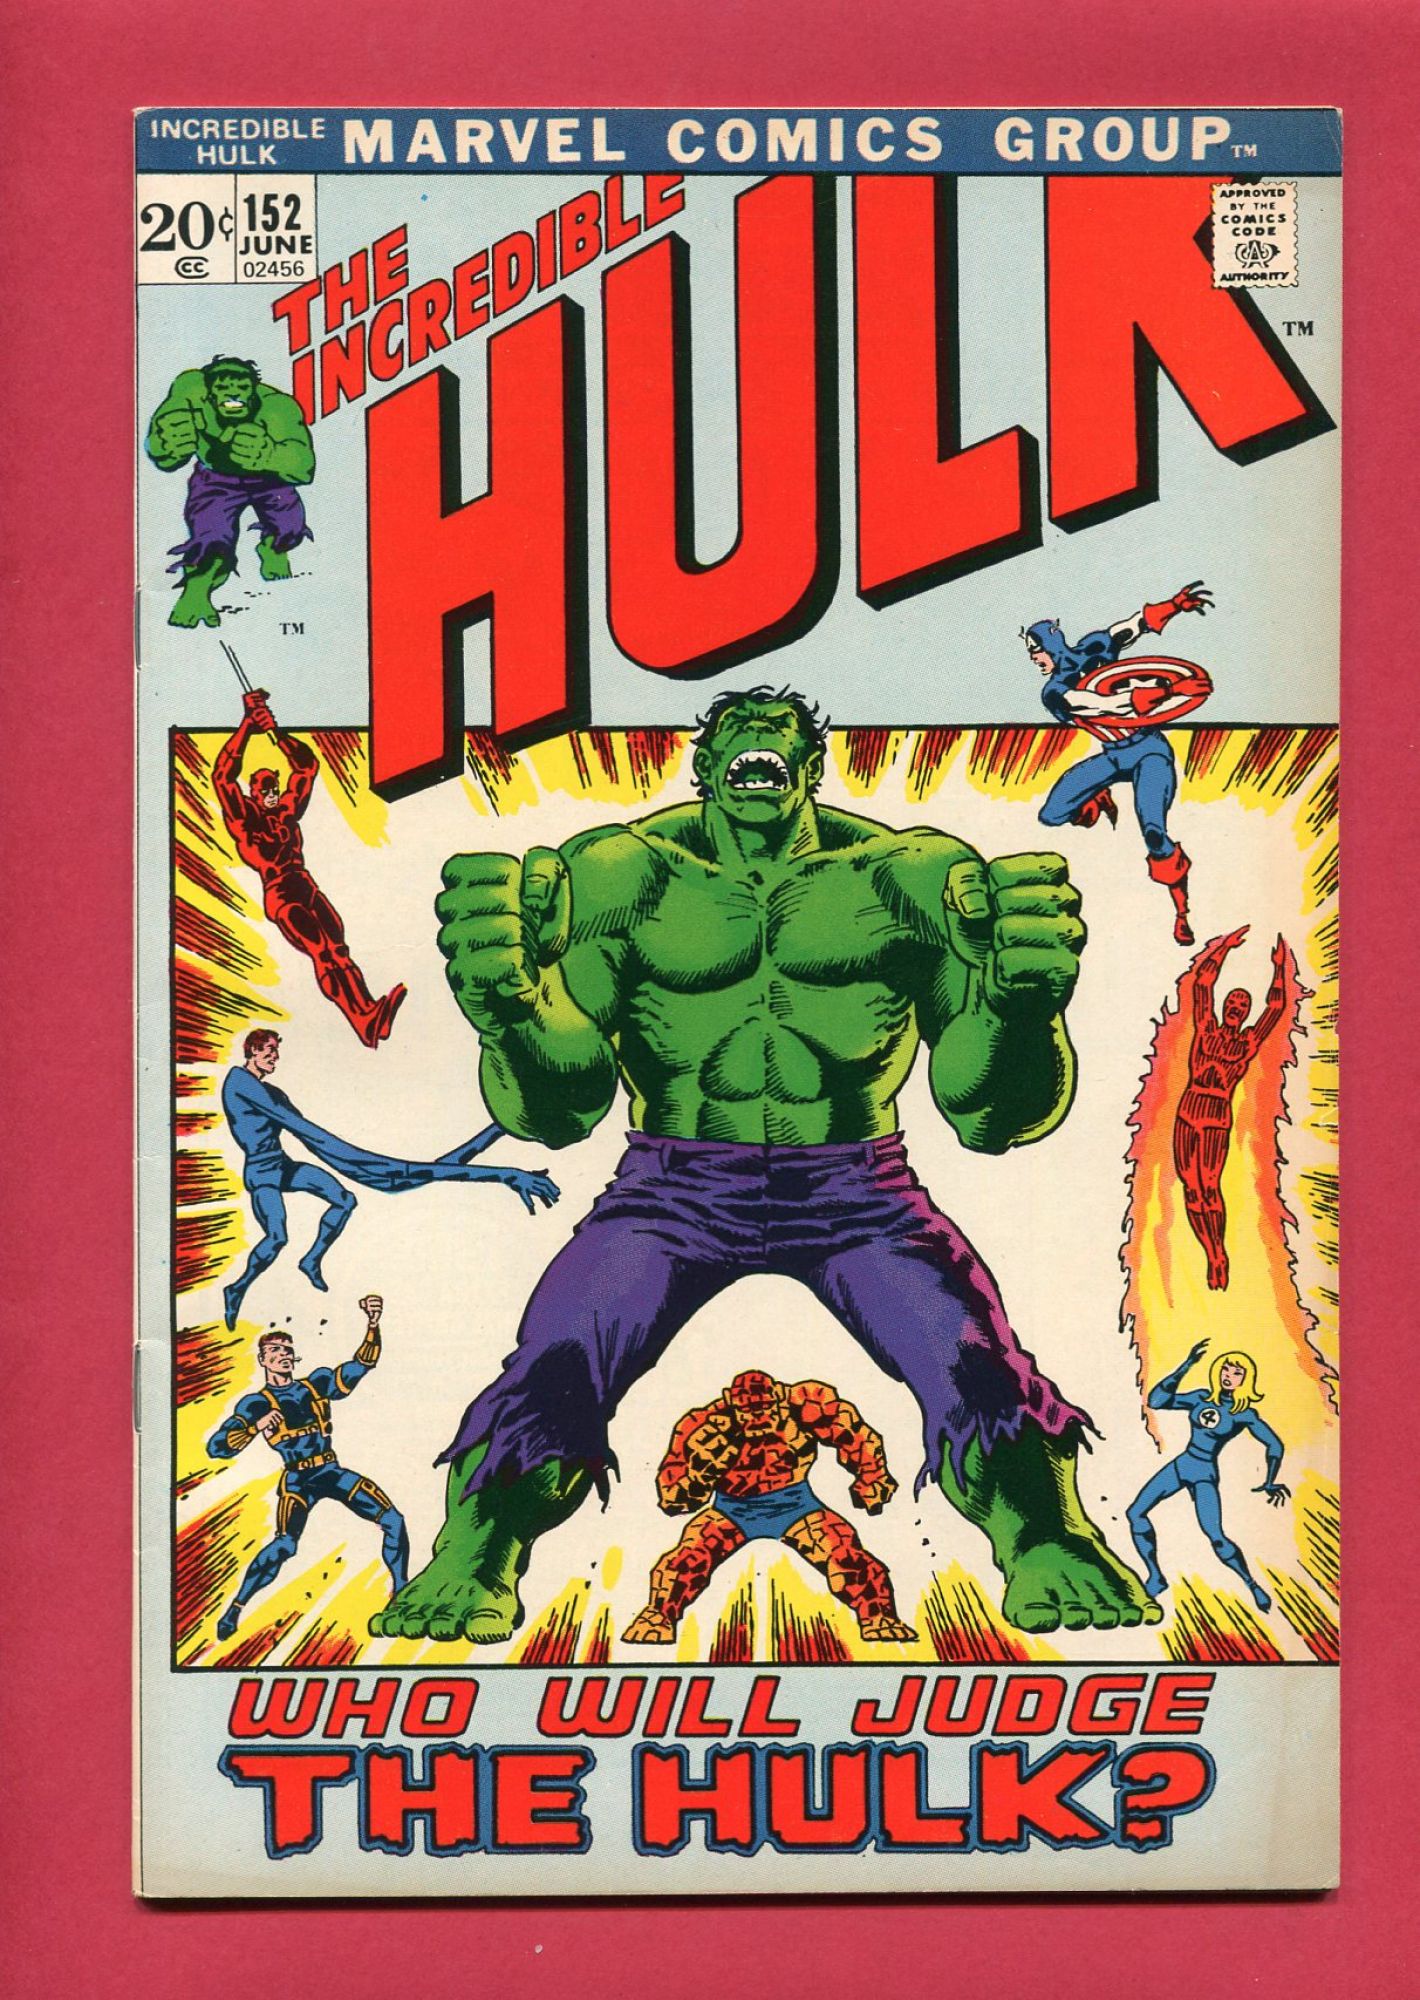 Incredible Hulk #152, Jun 1972, 7.0 FN/VF